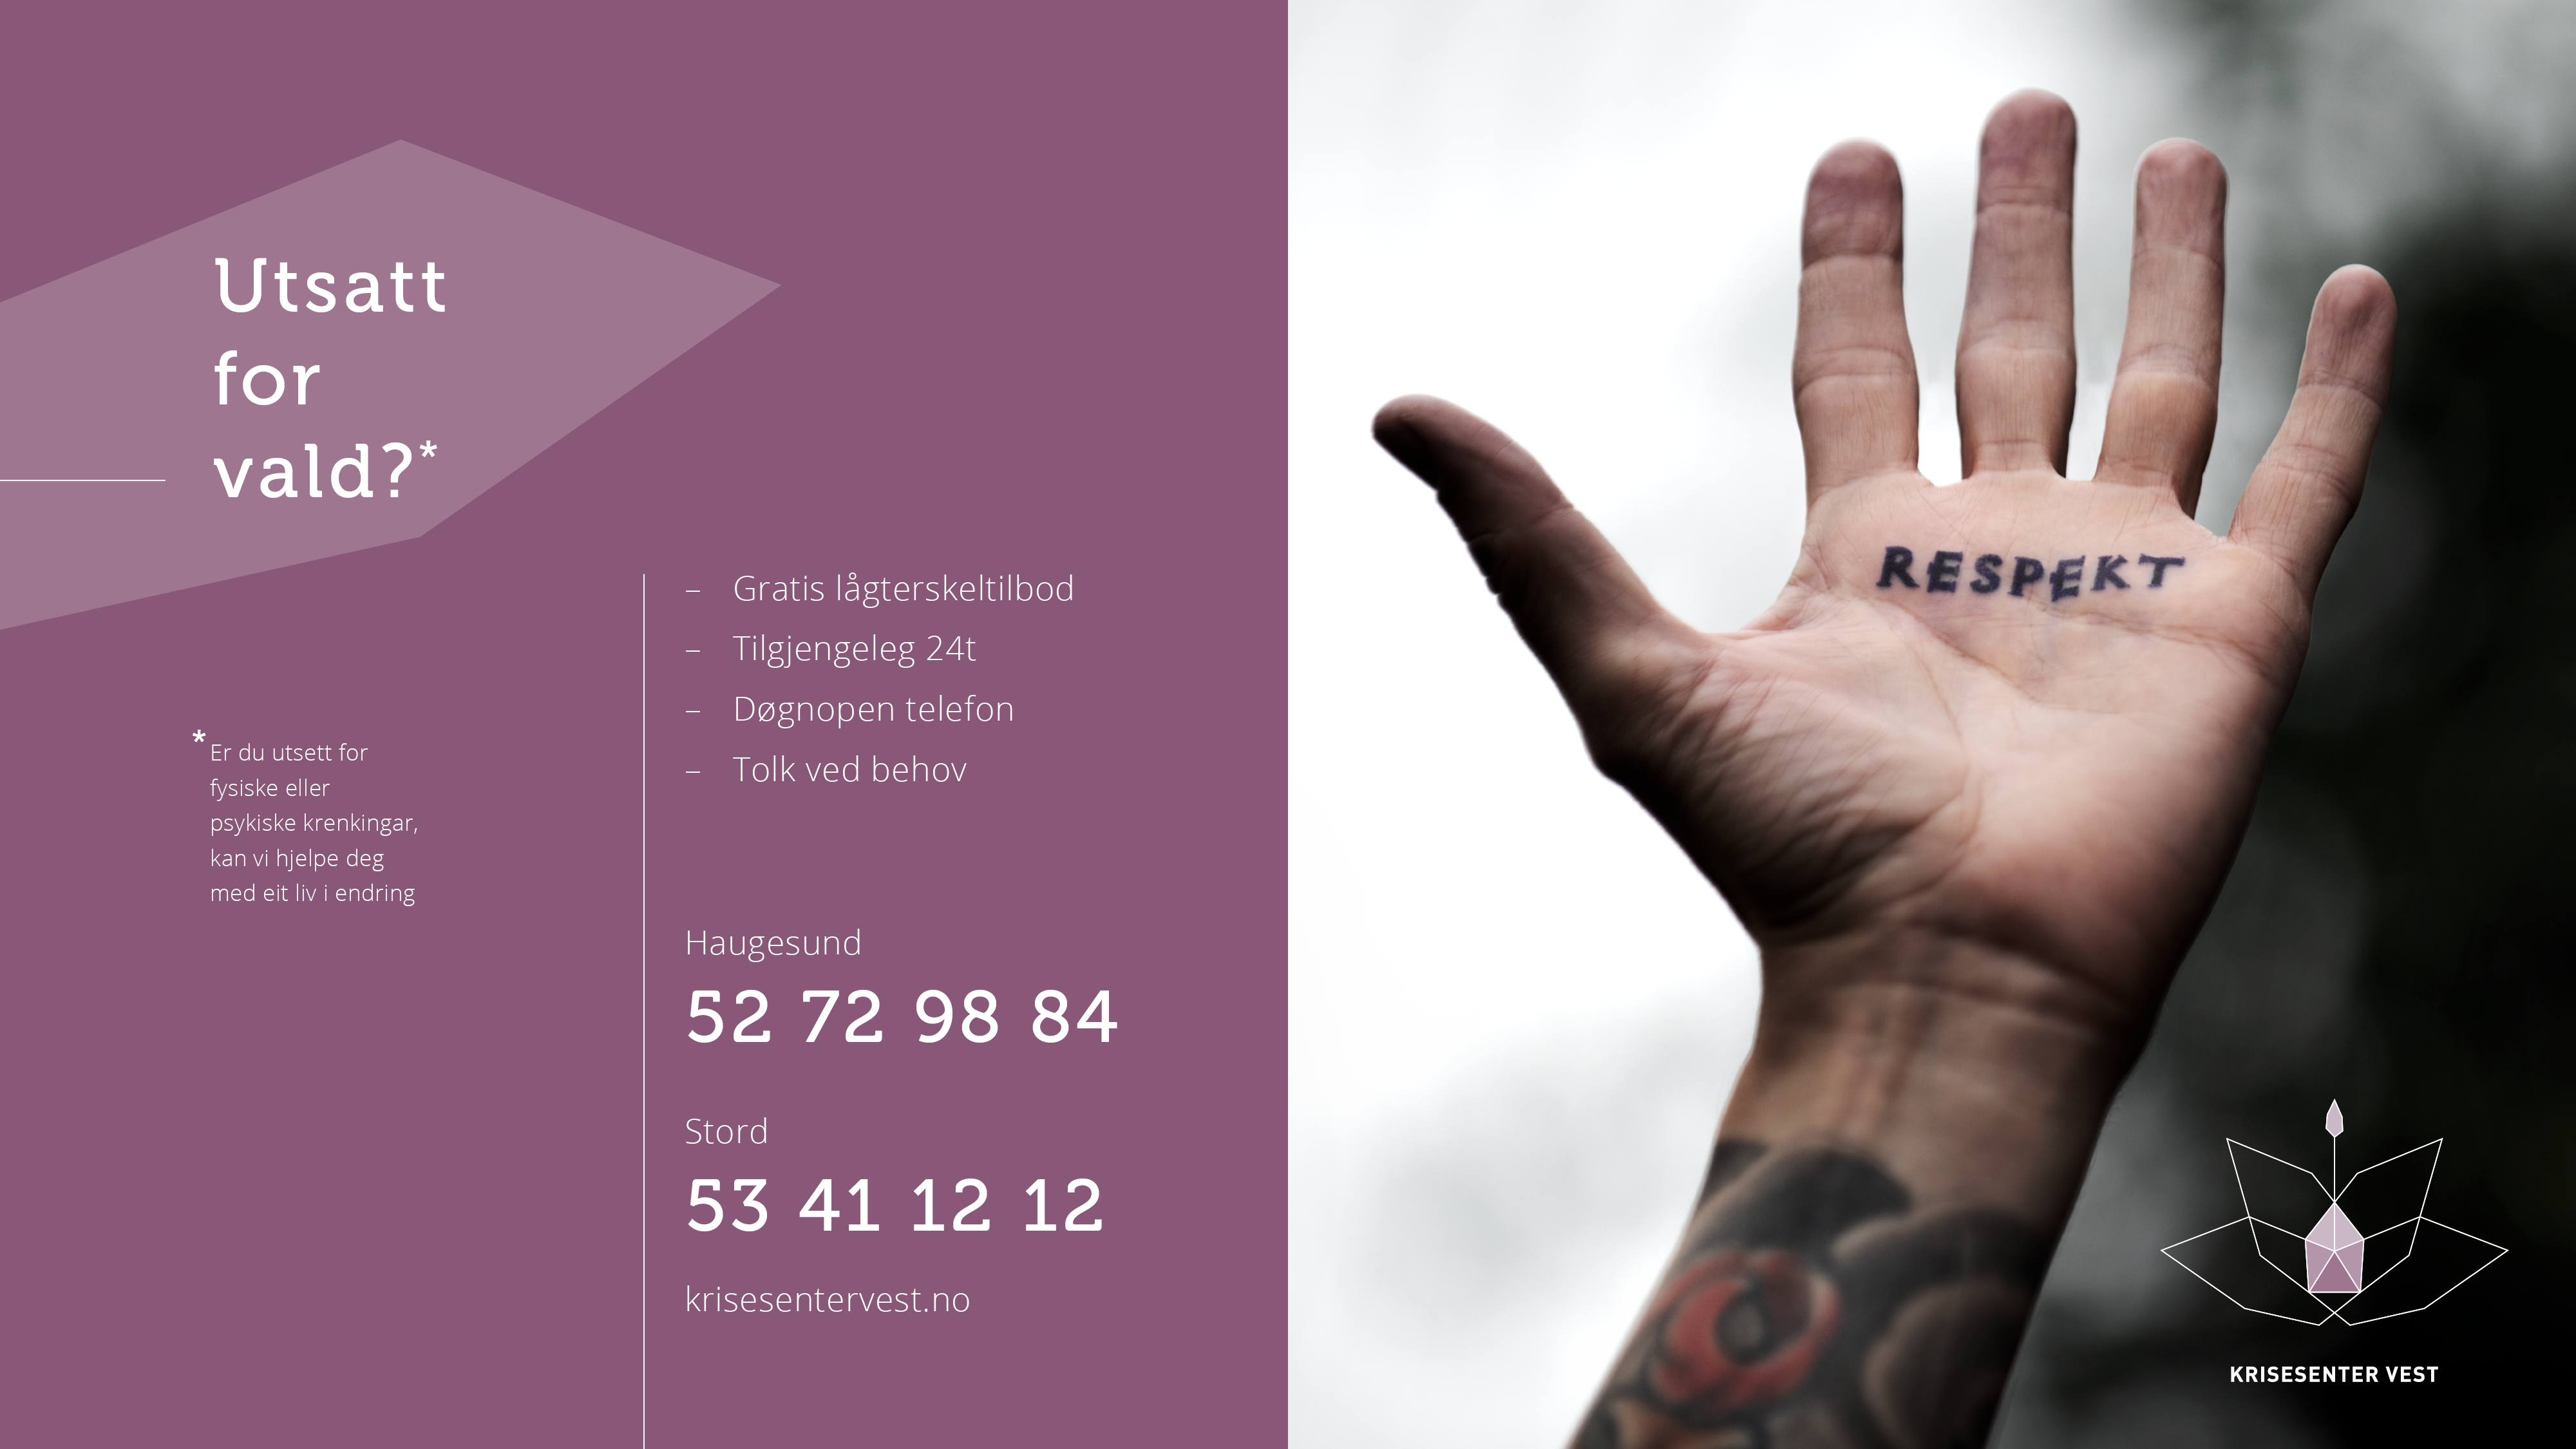 Plakat med informasjon om Krisesenter Vest illustrert med ei hand som har tatovert inn respekt i handflata. Bilete.